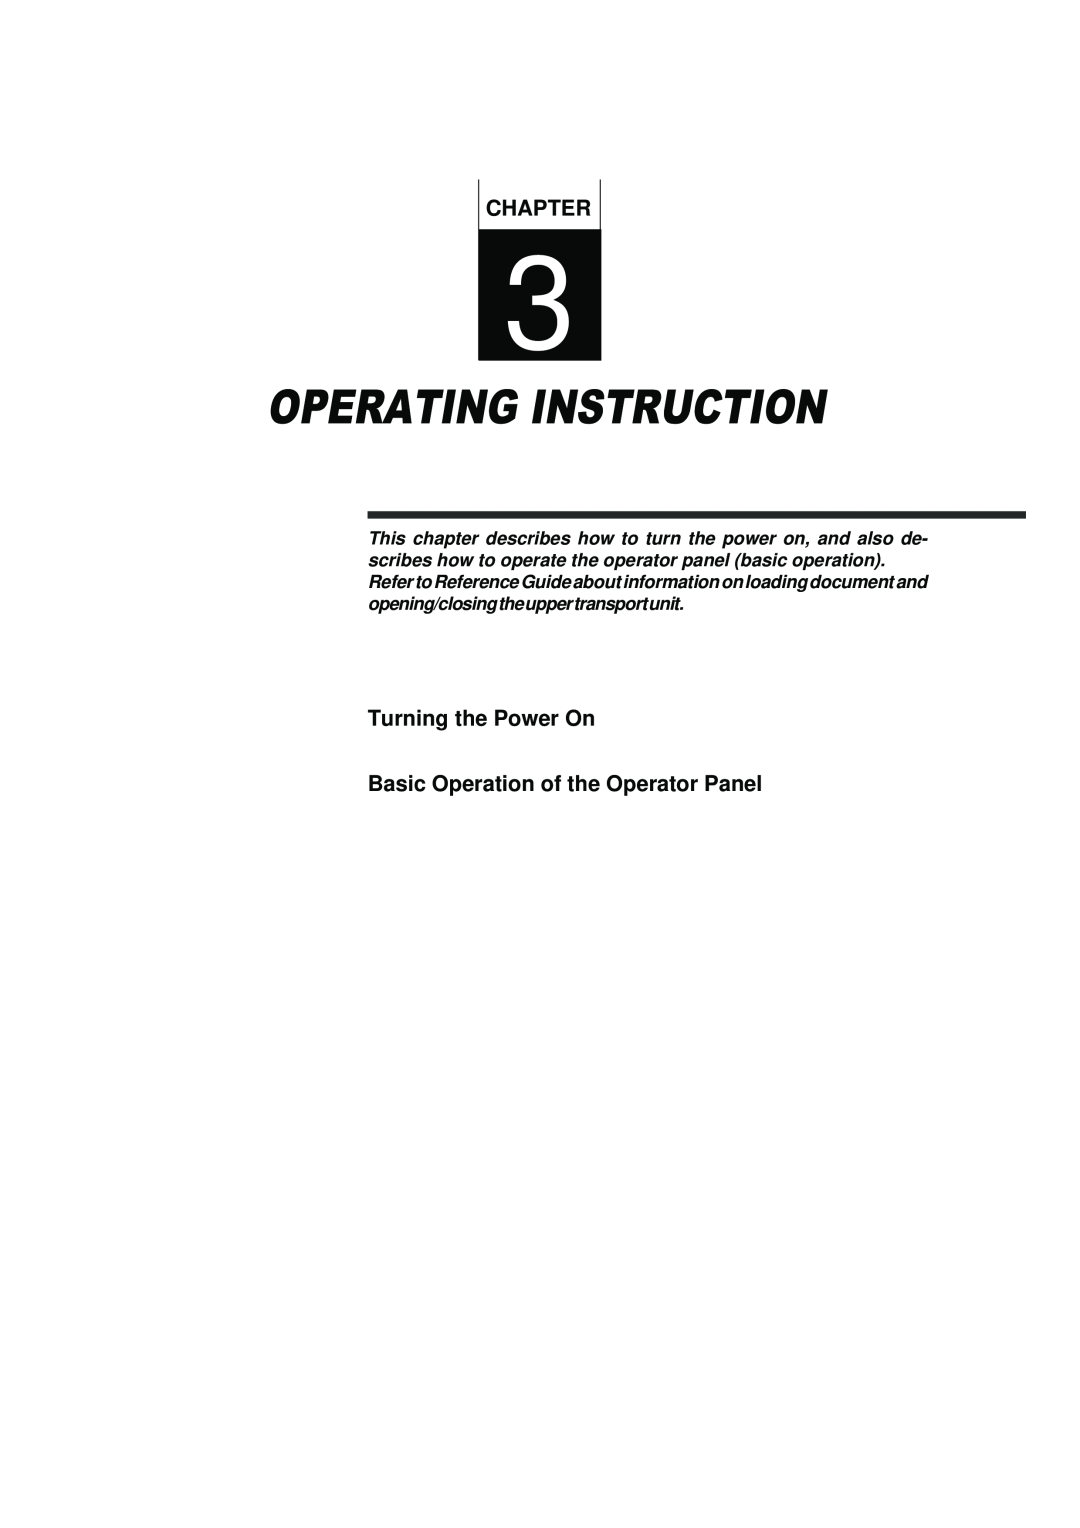 Fujitsu fi-4990C manual Operating Instruction, Turning the Power On Basic Operation of the Operator Panel, Chapter 